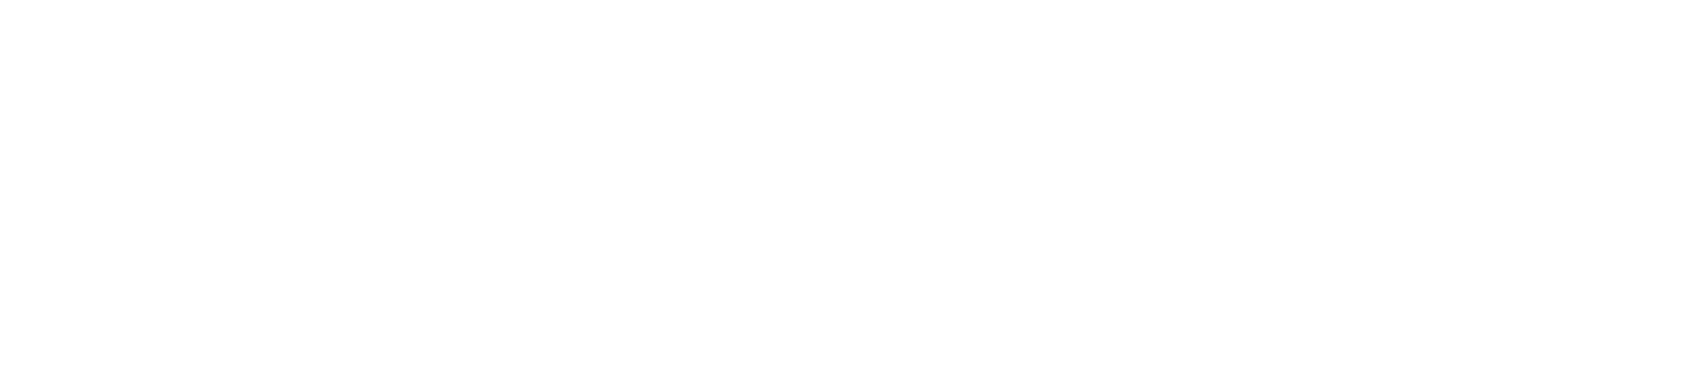 Pocket Bar Guide